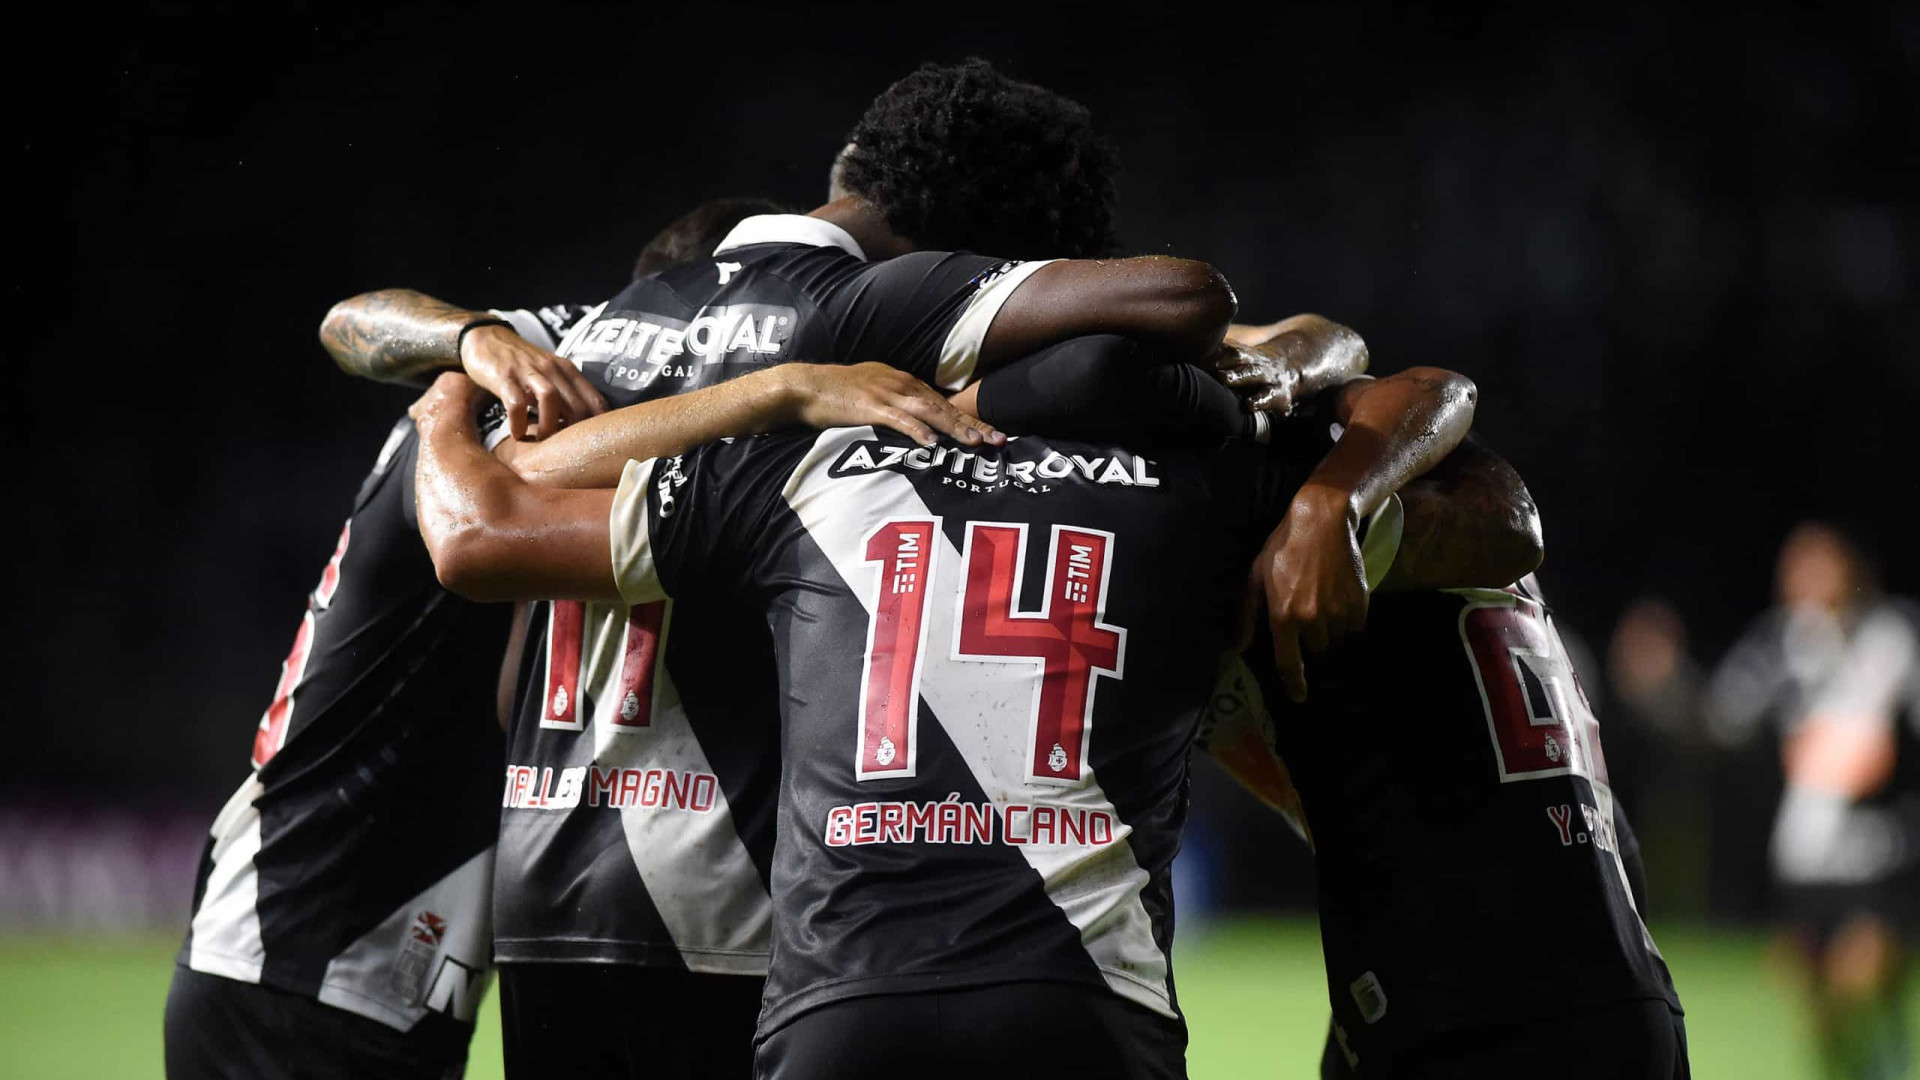 Vasco se apoia em São Januário pela 4ª vitória na Série B diante do Brusque